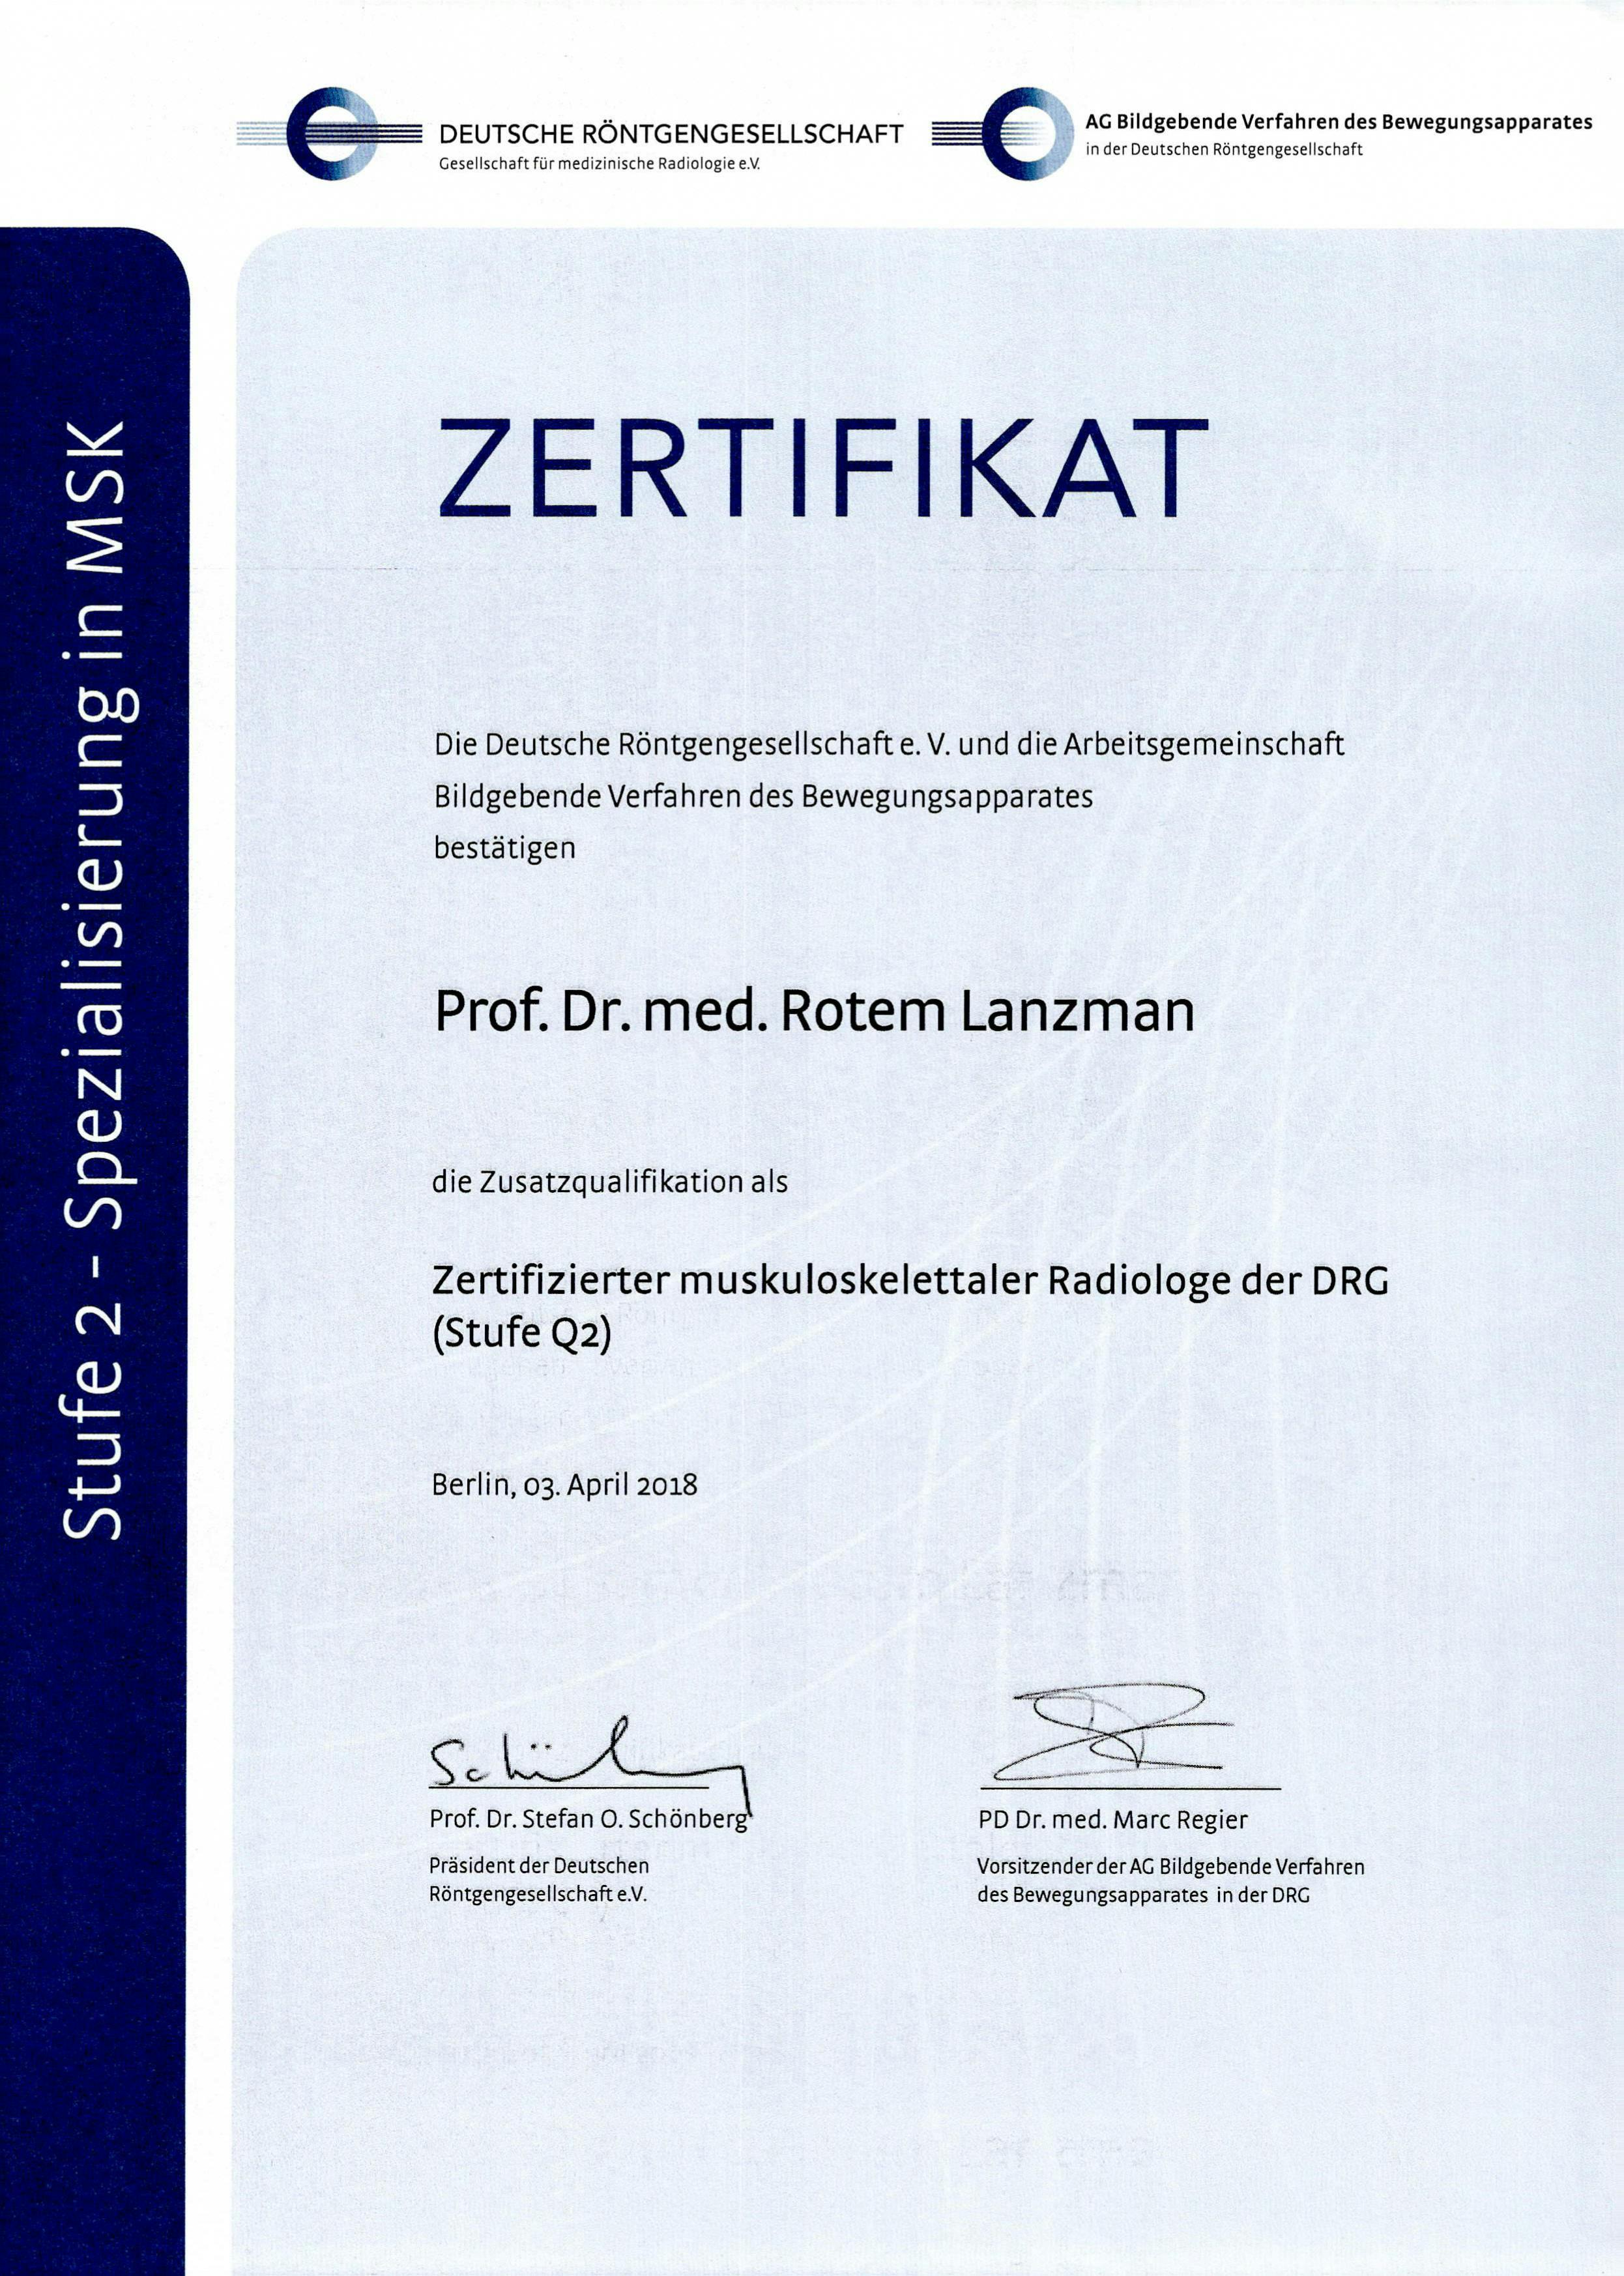 Zertifikat der Deutschen Röntgengesellschaft für Professor Dr. med. Rotem Lanzmann als muskuloskelettaler Radiologe der DRG (Stufe Q2)